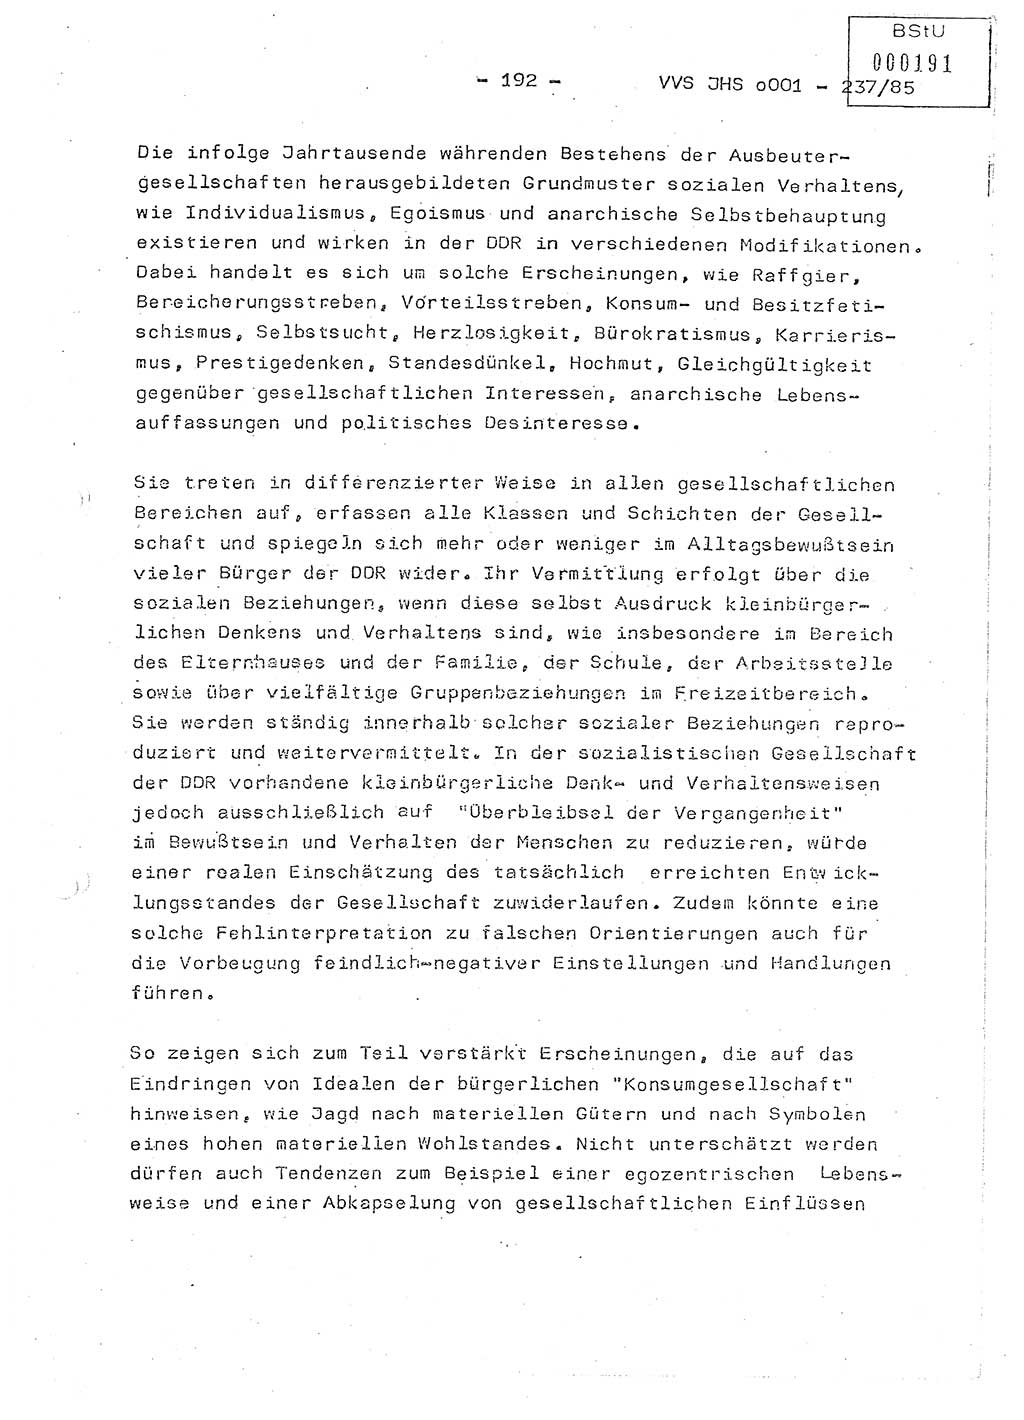 Dissertation Oberstleutnant Peter Jakulski (JHS), Oberstleutnat Christian Rudolph (HA Ⅸ), Major Horst Böttger (ZMD), Major Wolfgang Grüneberg (JHS), Major Albert Meutsch (JHS), Ministerium für Staatssicherheit (MfS) [Deutsche Demokratische Republik (DDR)], Juristische Hochschule (JHS), Vertrauliche Verschlußsache (VVS) o001-237/85, Potsdam 1985, Seite 192 (Diss. MfS DDR JHS VVS o001-237/85 1985, S. 192)